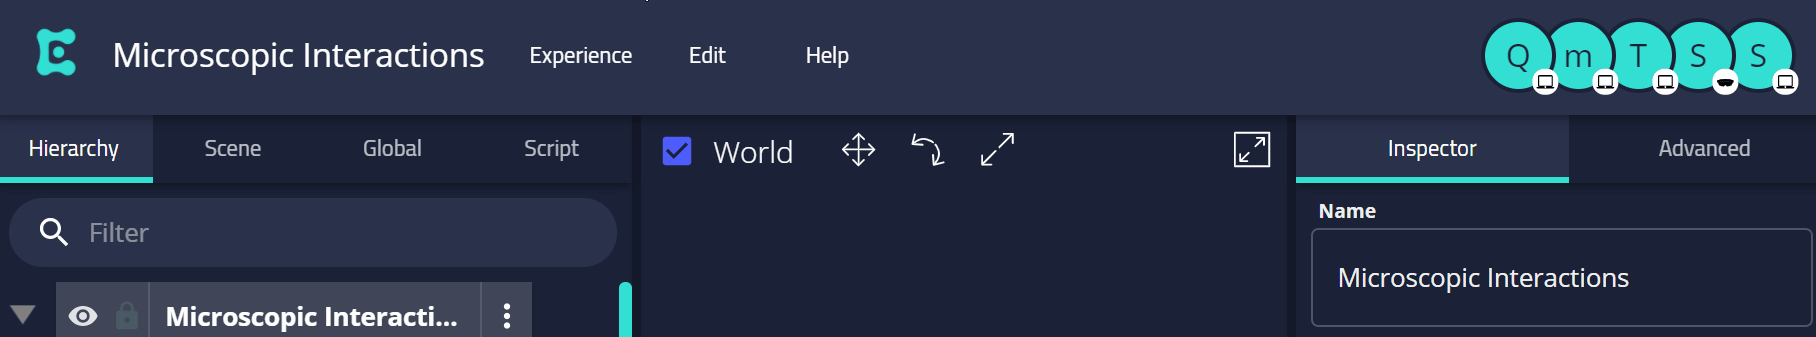 Nav header showing drop down menus: "Experience", "Edit", and "Help"